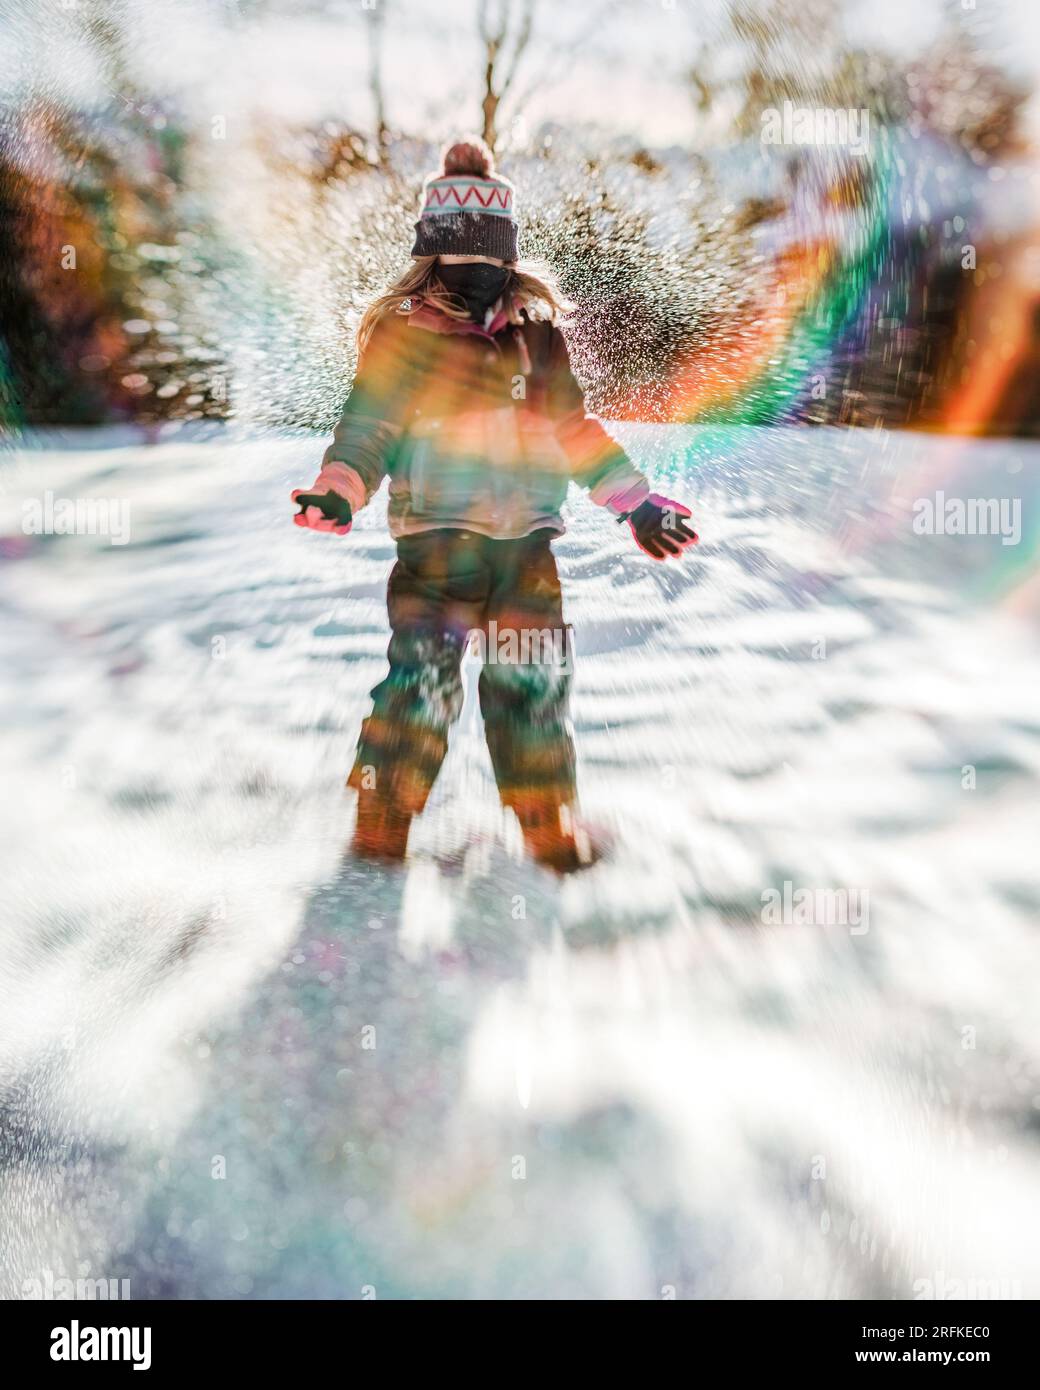 bambina di 8 anni che lancia neve in aria in una scena invernale nel cortile Foto Stock